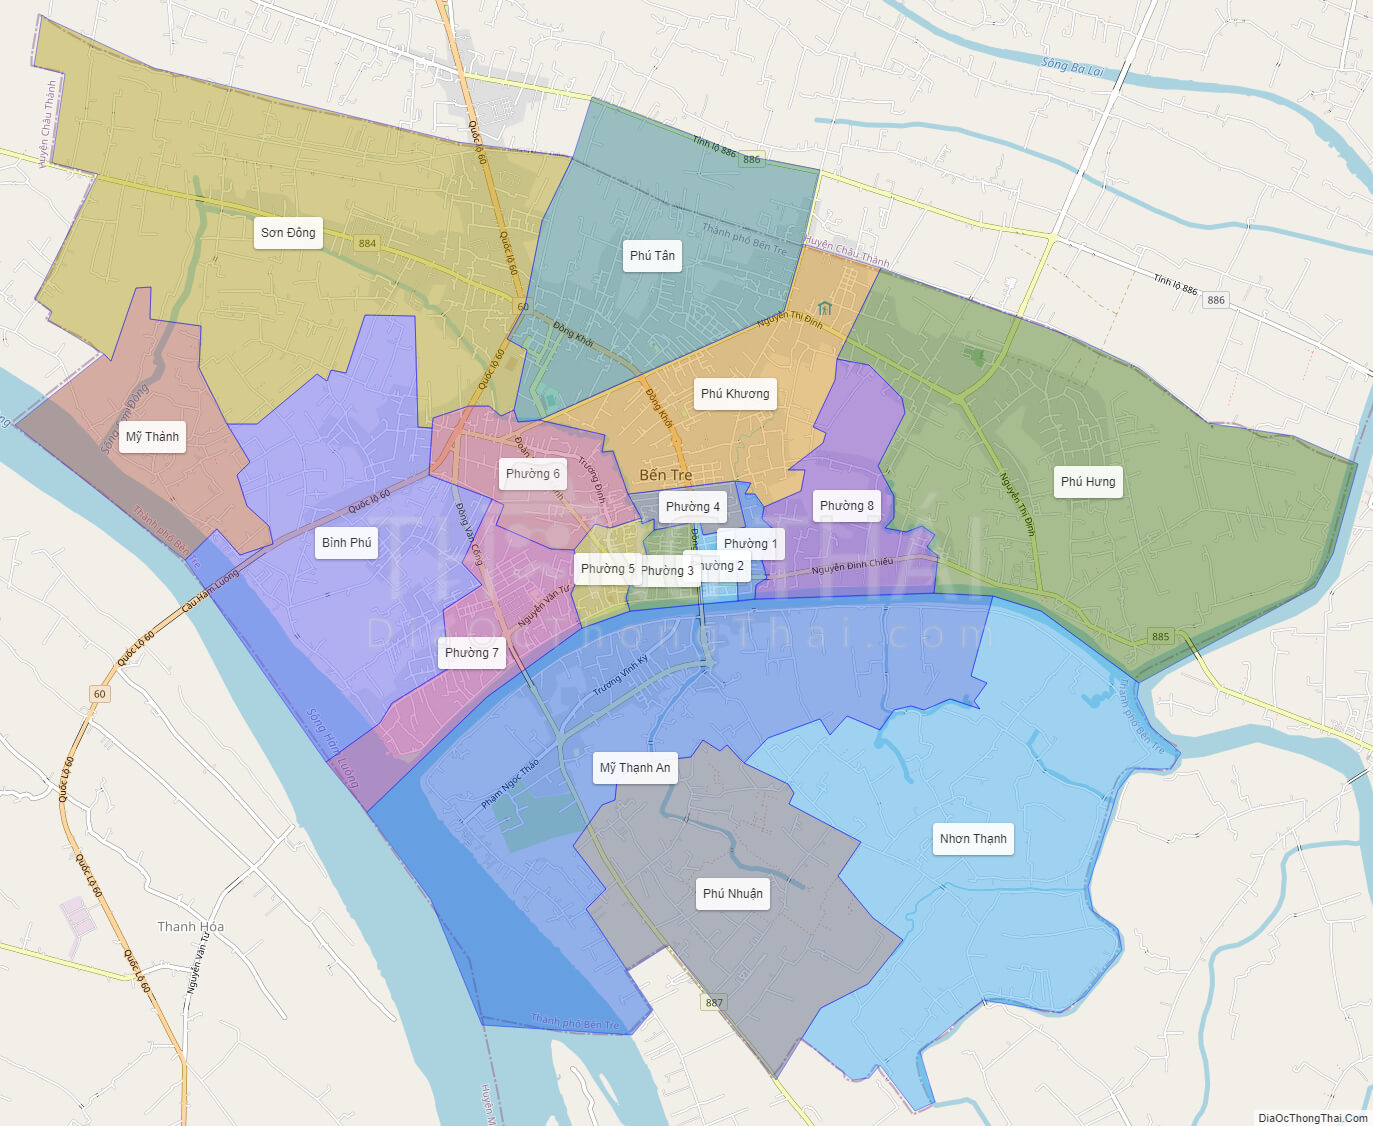 Bản đồ hành chính tp Bến Tre bao gồm những phường và đường nào? (What are the streets and wards included in the administrative map of Ben Tre city?)